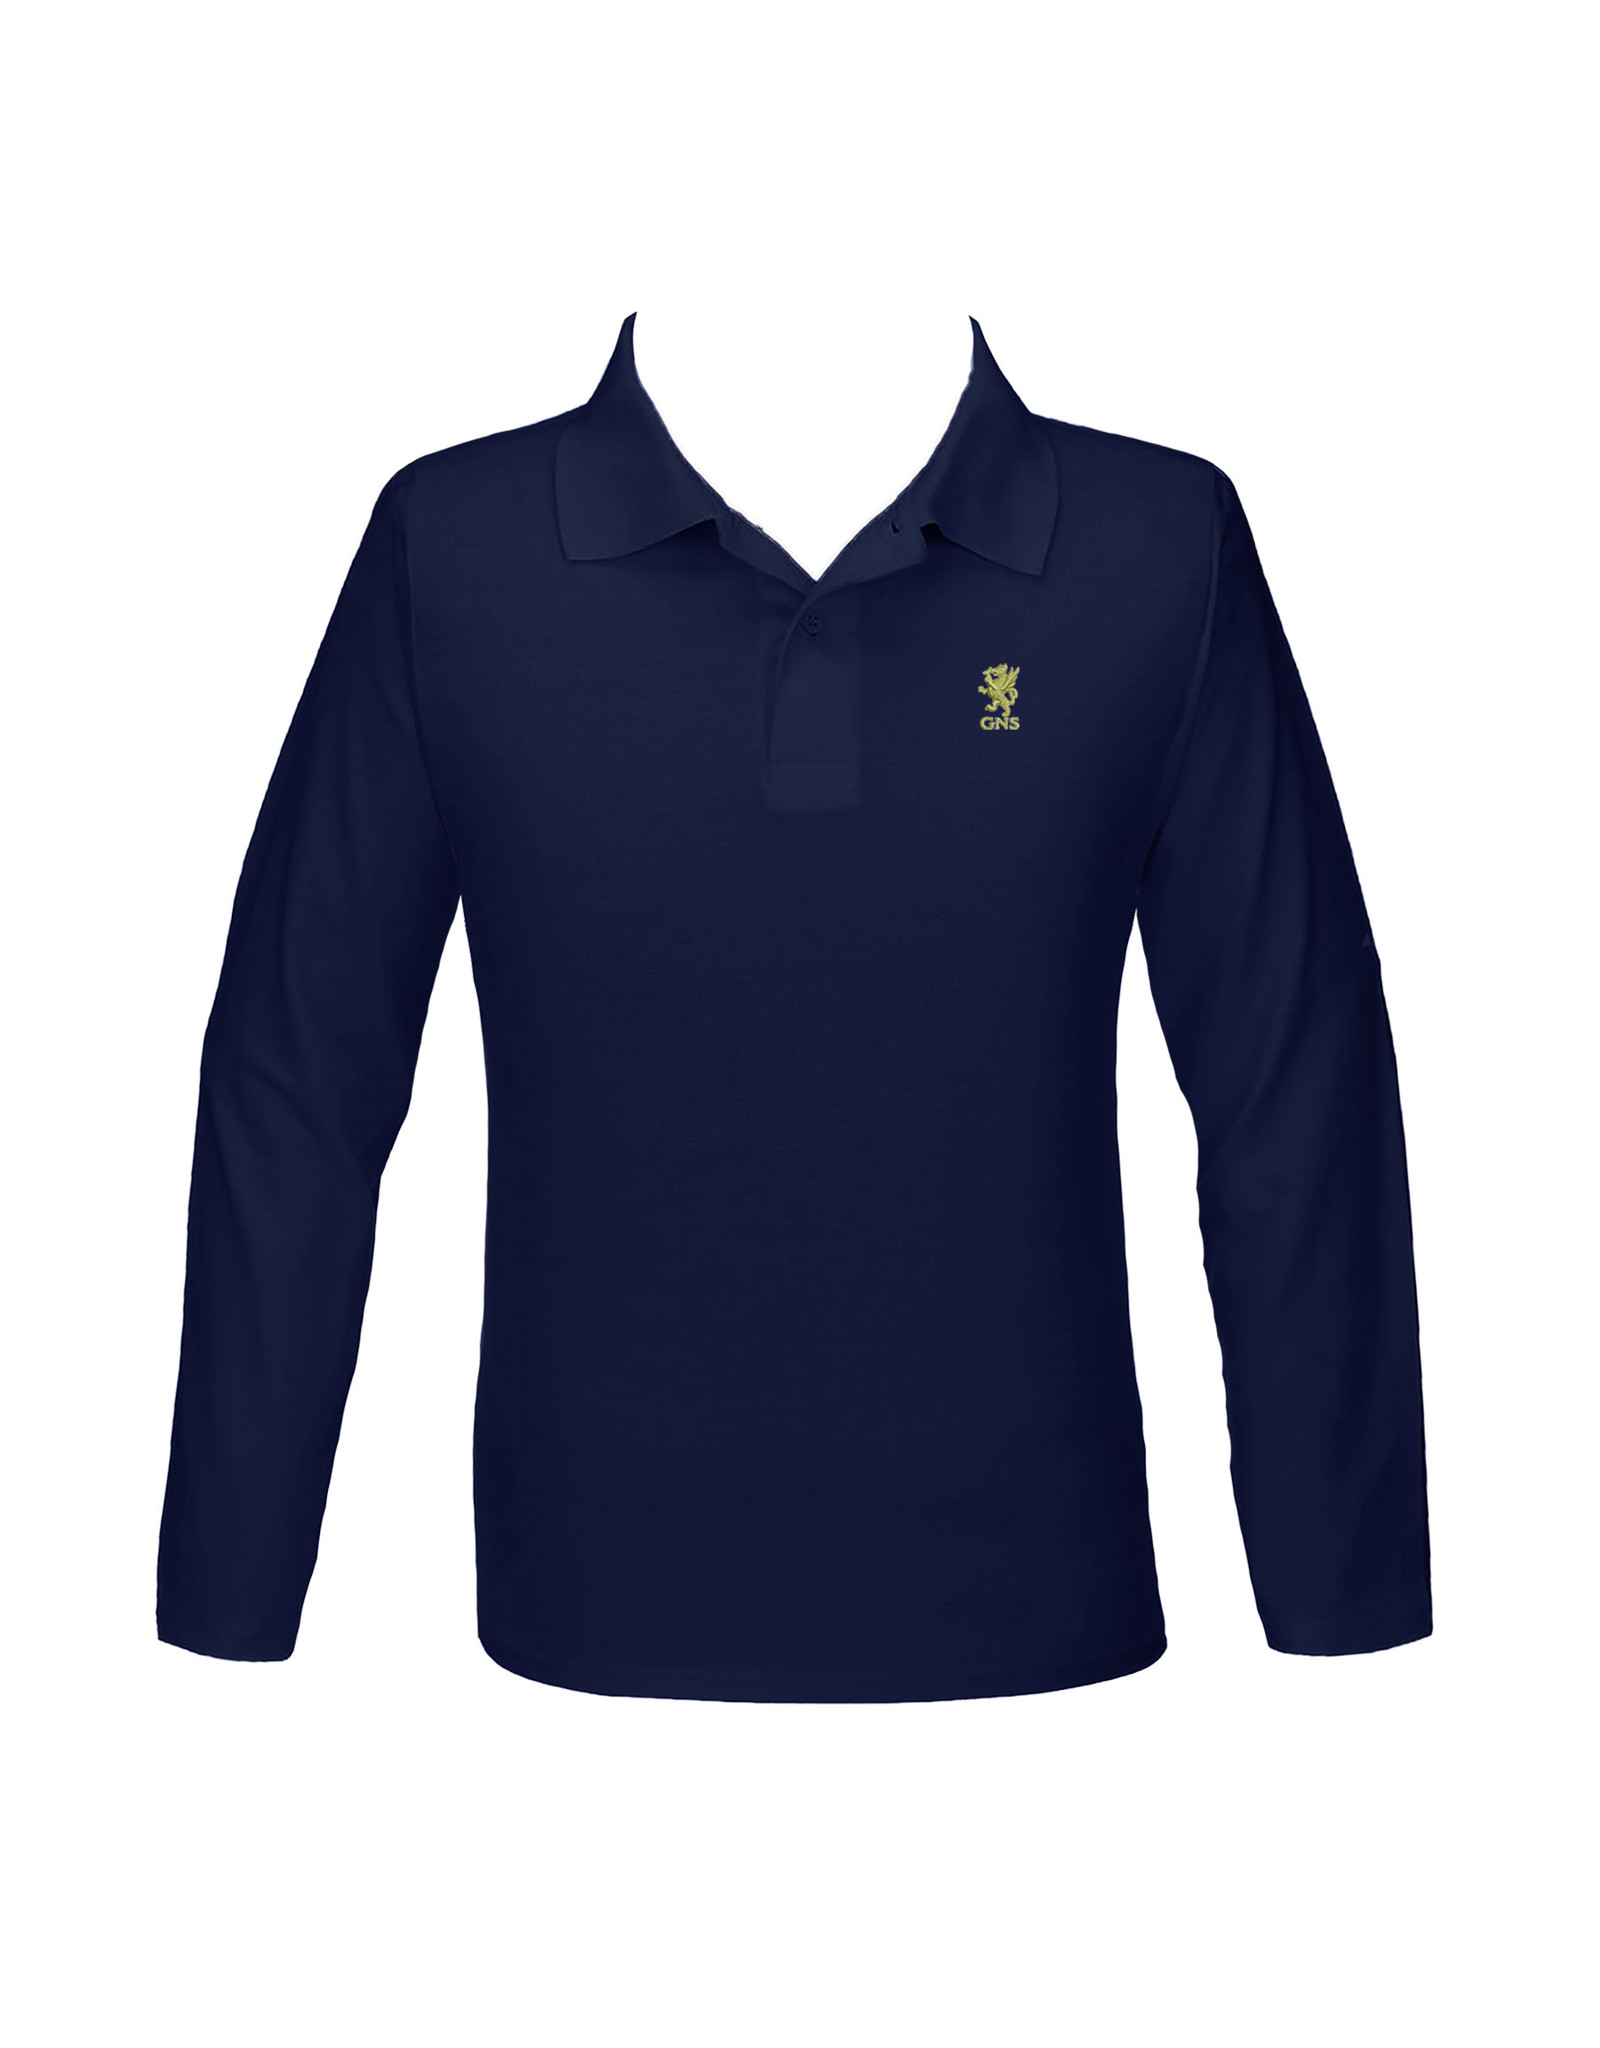 Cambridge Golf Shirt, Long Sleeve - White - Youth/Unisex